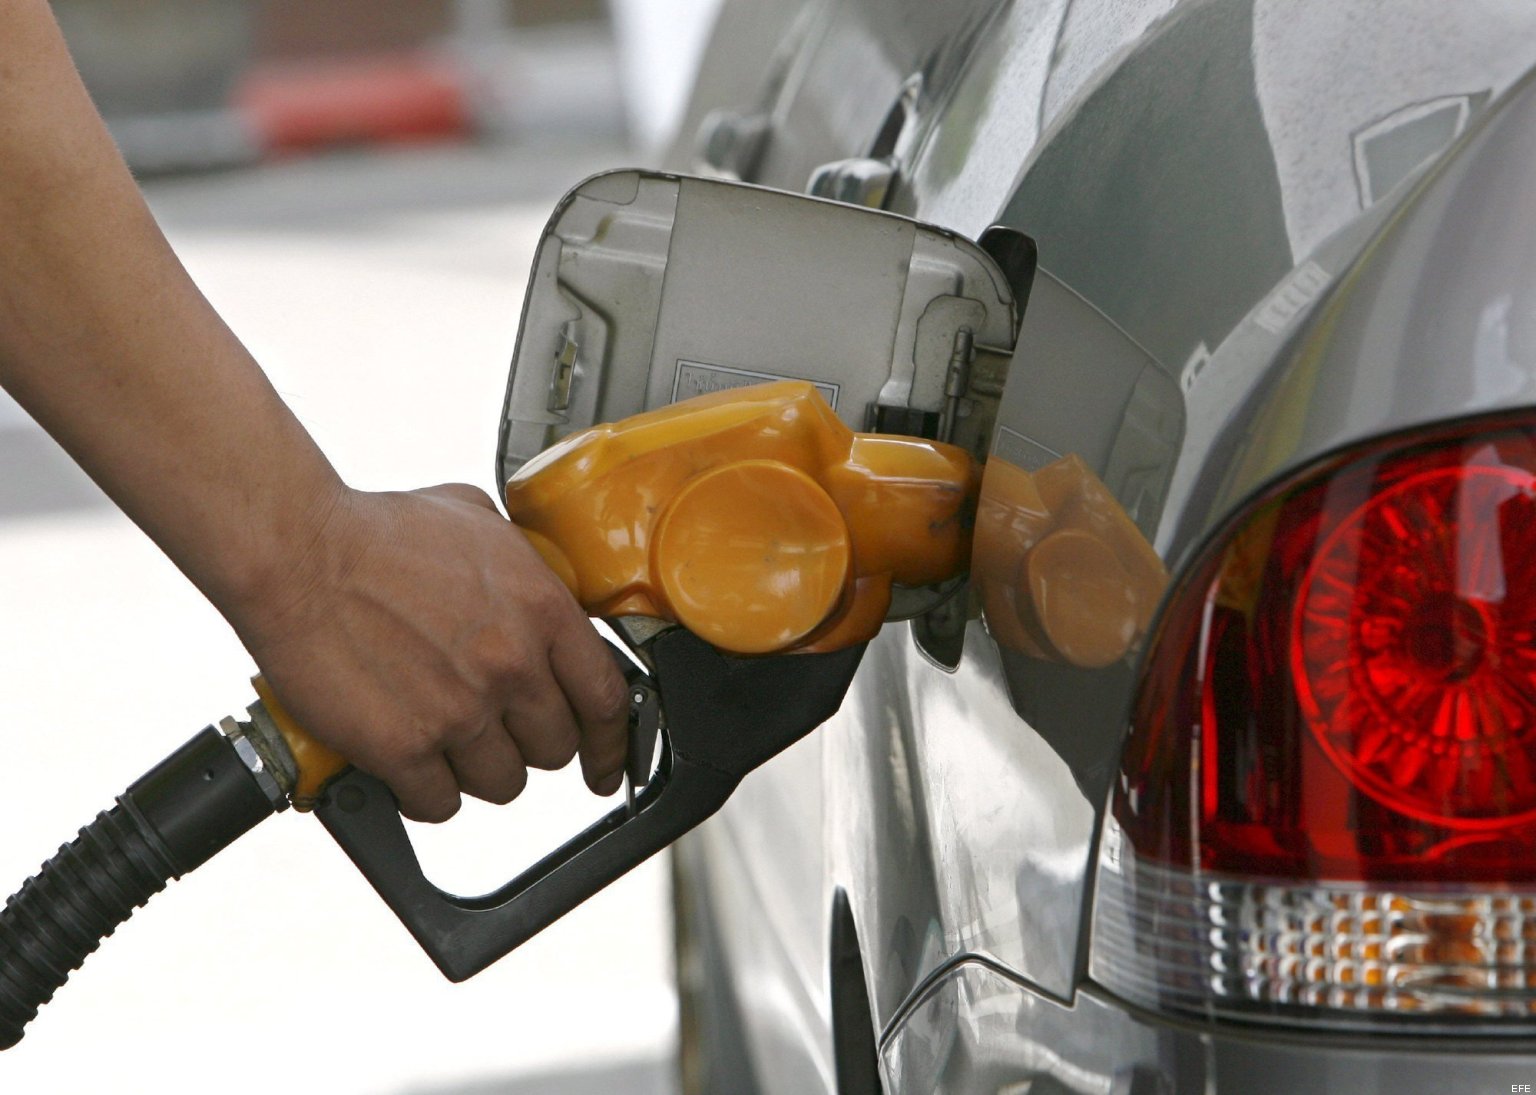 Aresep aprueba sétimo aumento consecutivo en gasolinas: Subirán ¢4,3 por litro